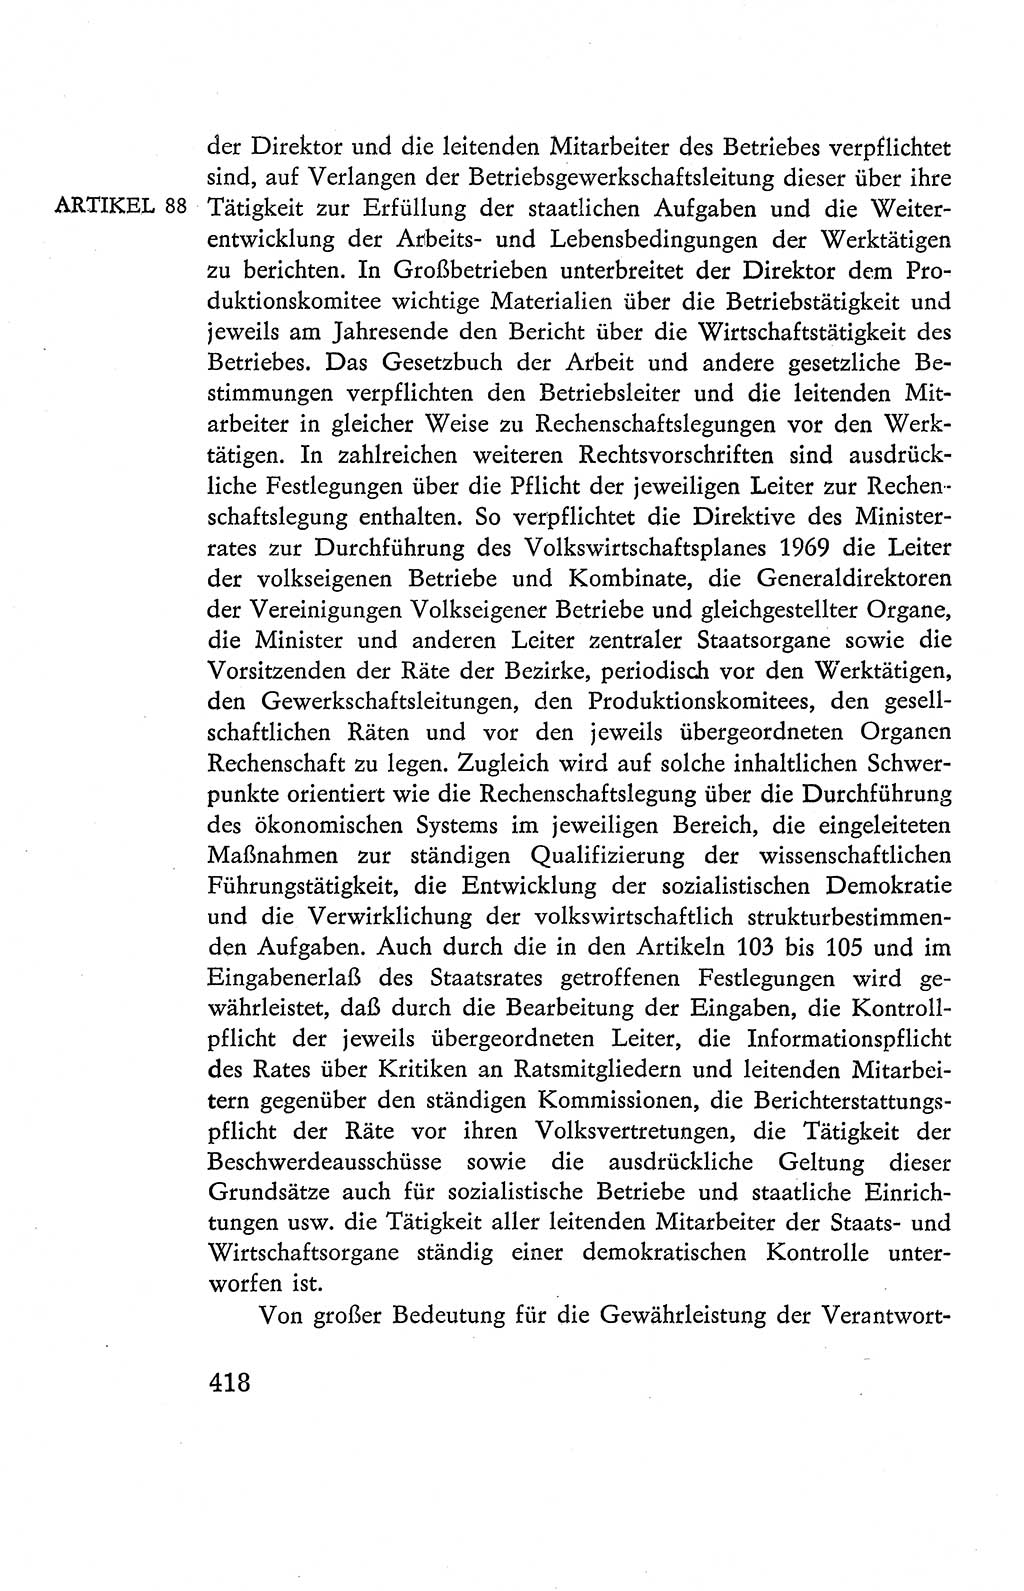 Verfassung der Deutschen Demokratischen Republik (DDR), Dokumente, Kommentar 1969, Band 2, Seite 418 (Verf. DDR Dok. Komm. 1969, Bd. 2, S. 418)